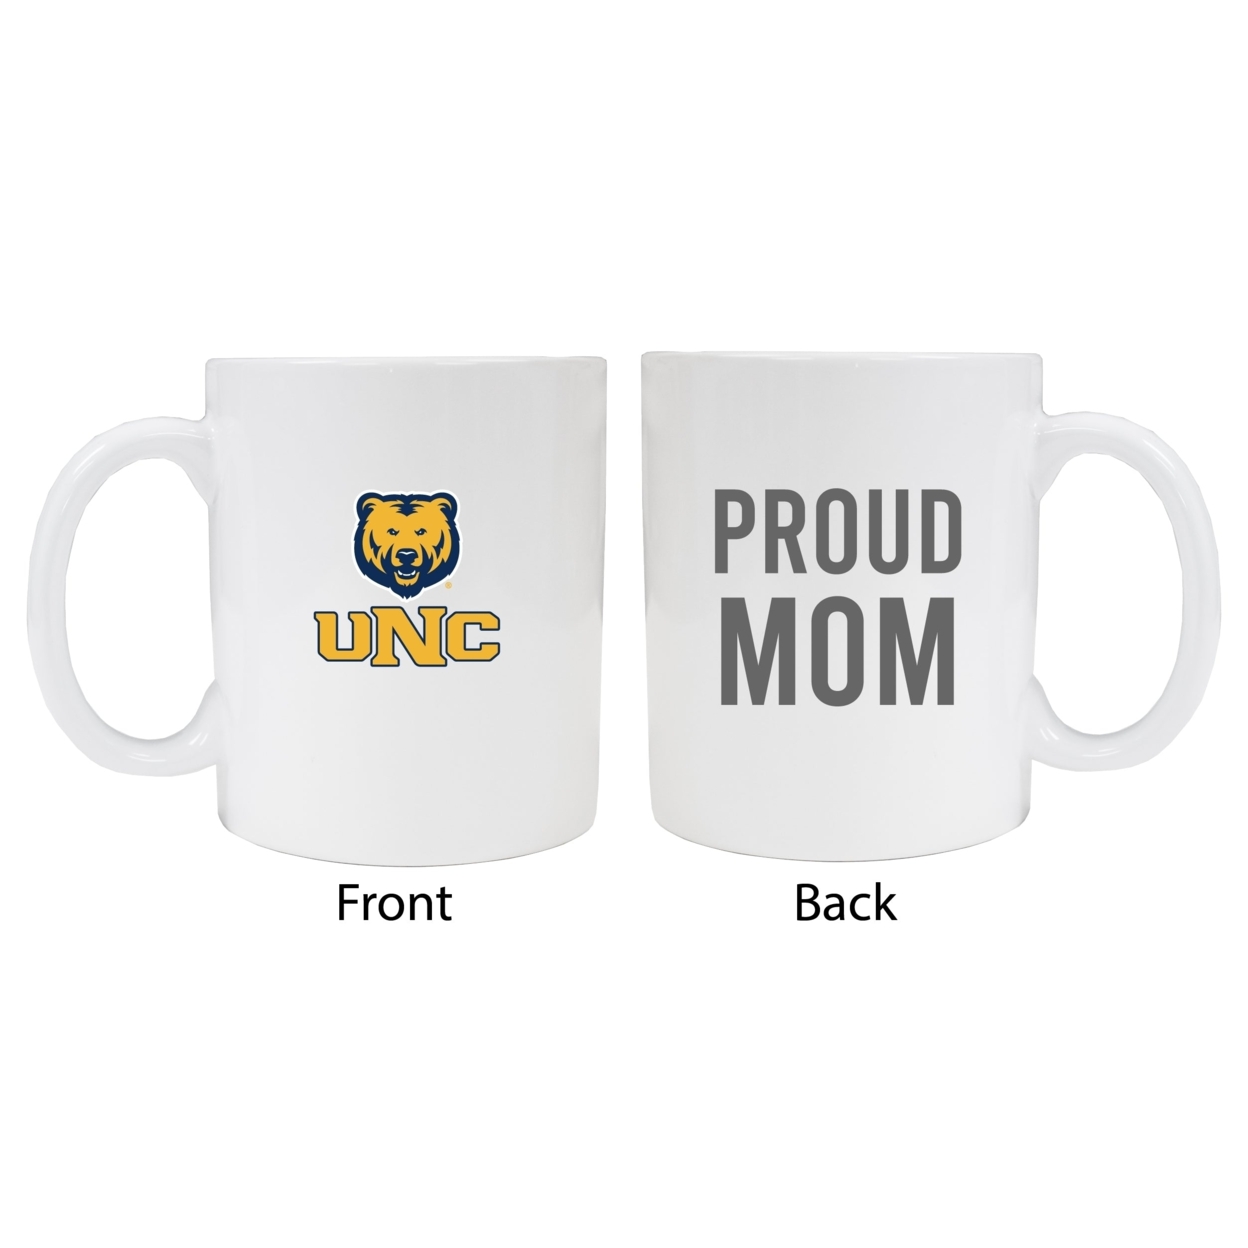 Northern Colorado Bears Proud Mom Ceramic Coffee Mug - White